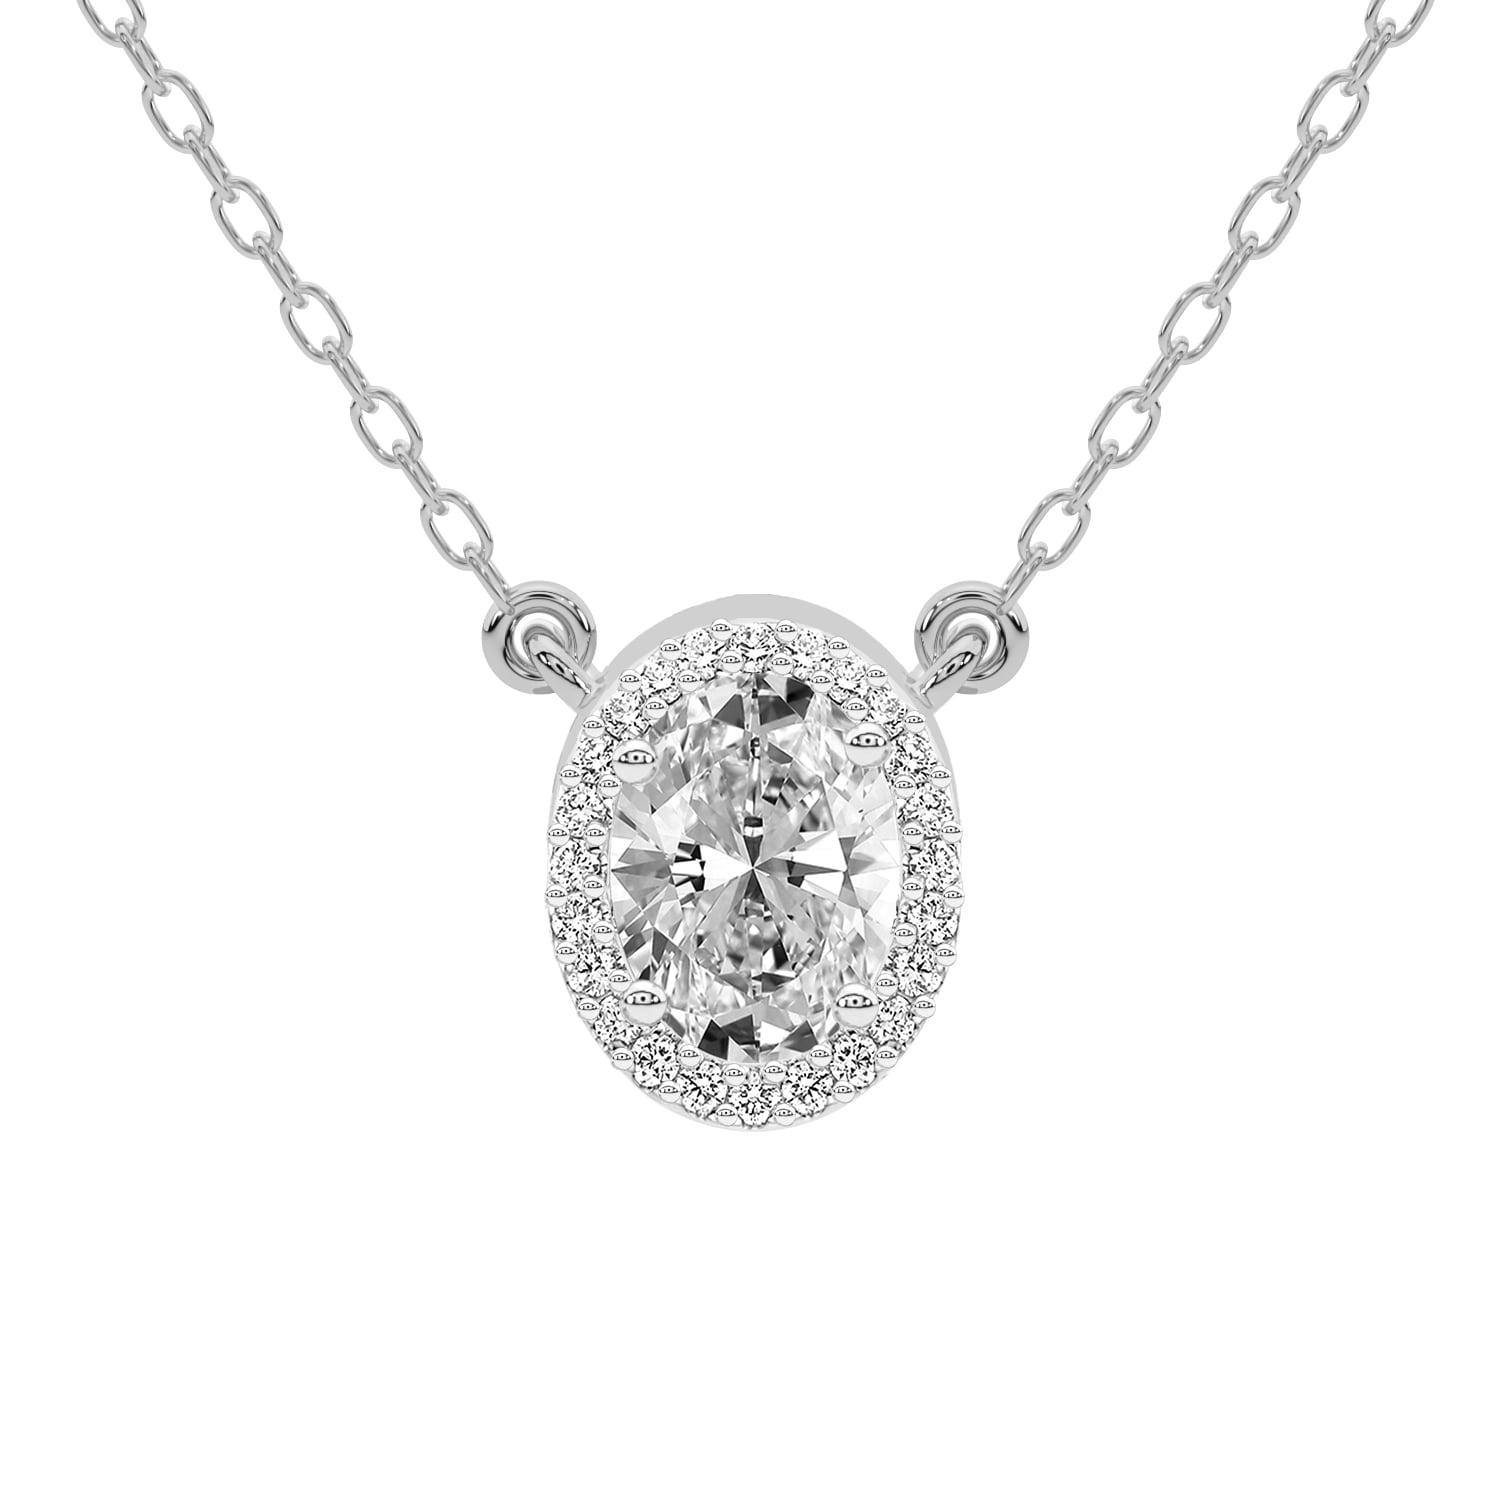 Diamond Pendant Necklace For Women | 6 Carat IGI Certified Oval Shape ...